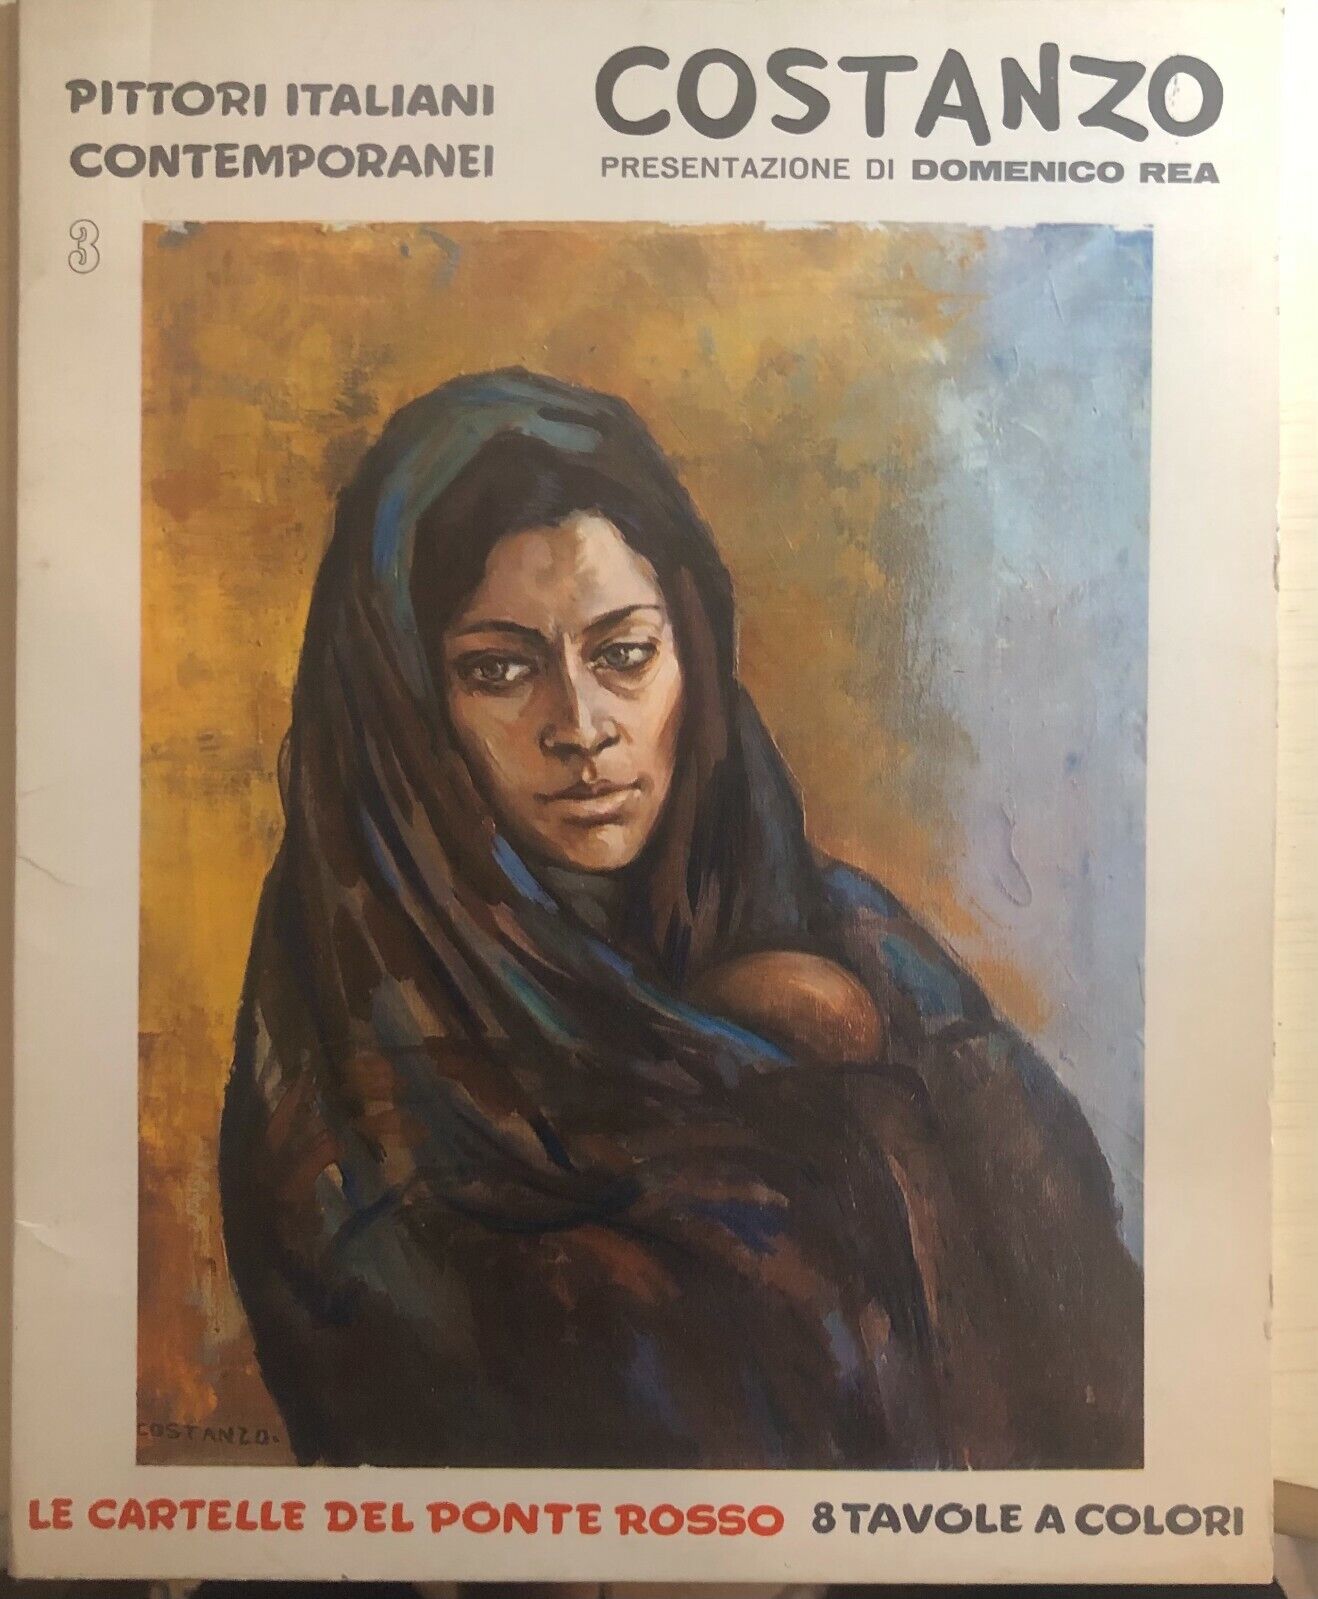 Pittori italiani contemporanei 3 - Costanzo di Domenico Rea,  1969,  Editrice Po